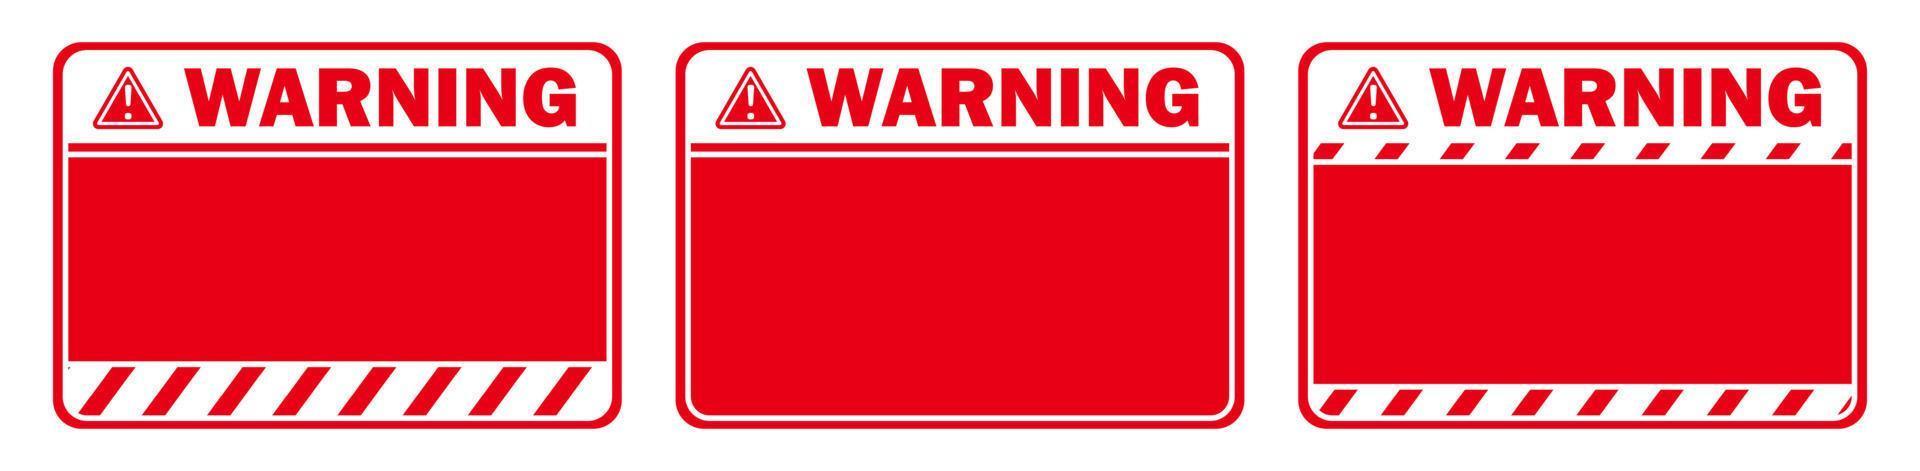 aviso cuidado vermelho branco sinal área de espaço de texto caixa de mensagem adesivo etiqueta objeto mercadorias mercadoria vetor